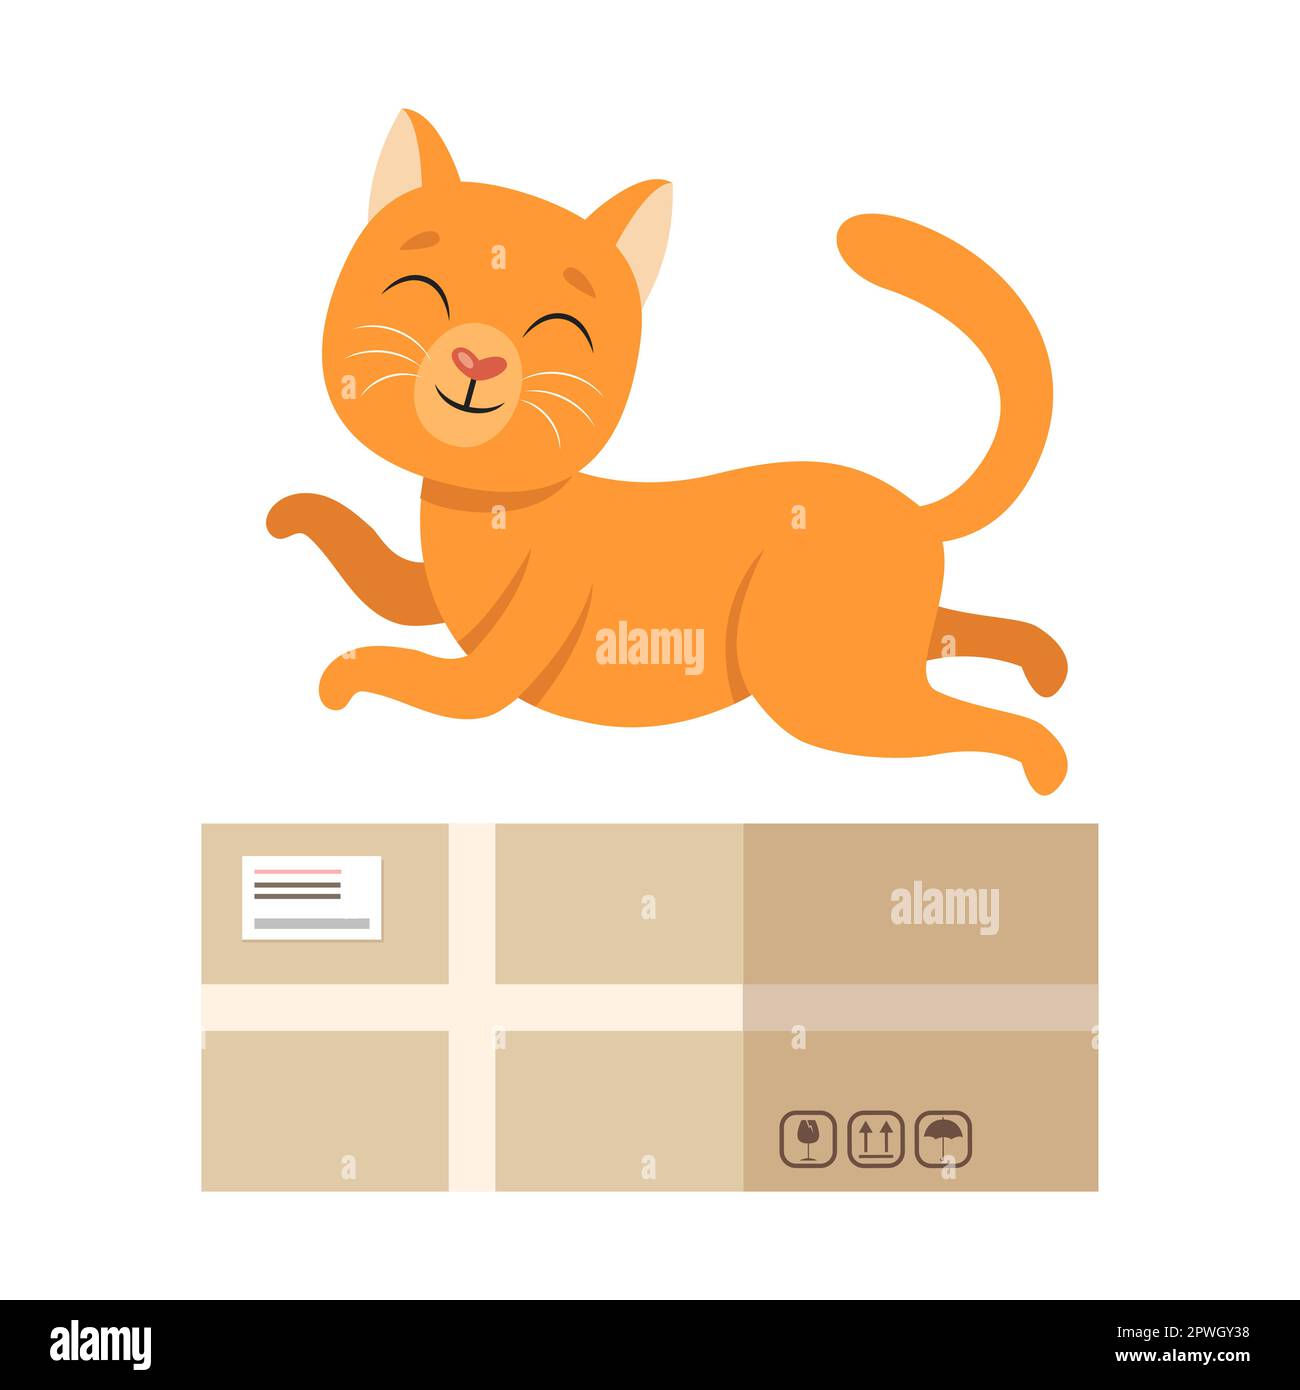 Gato con caja, preposición encima, ilustración de dibujos animados. Representación visual de la preposición inglesa de lugar para niños. Mascota arriba Ilustración del Vector